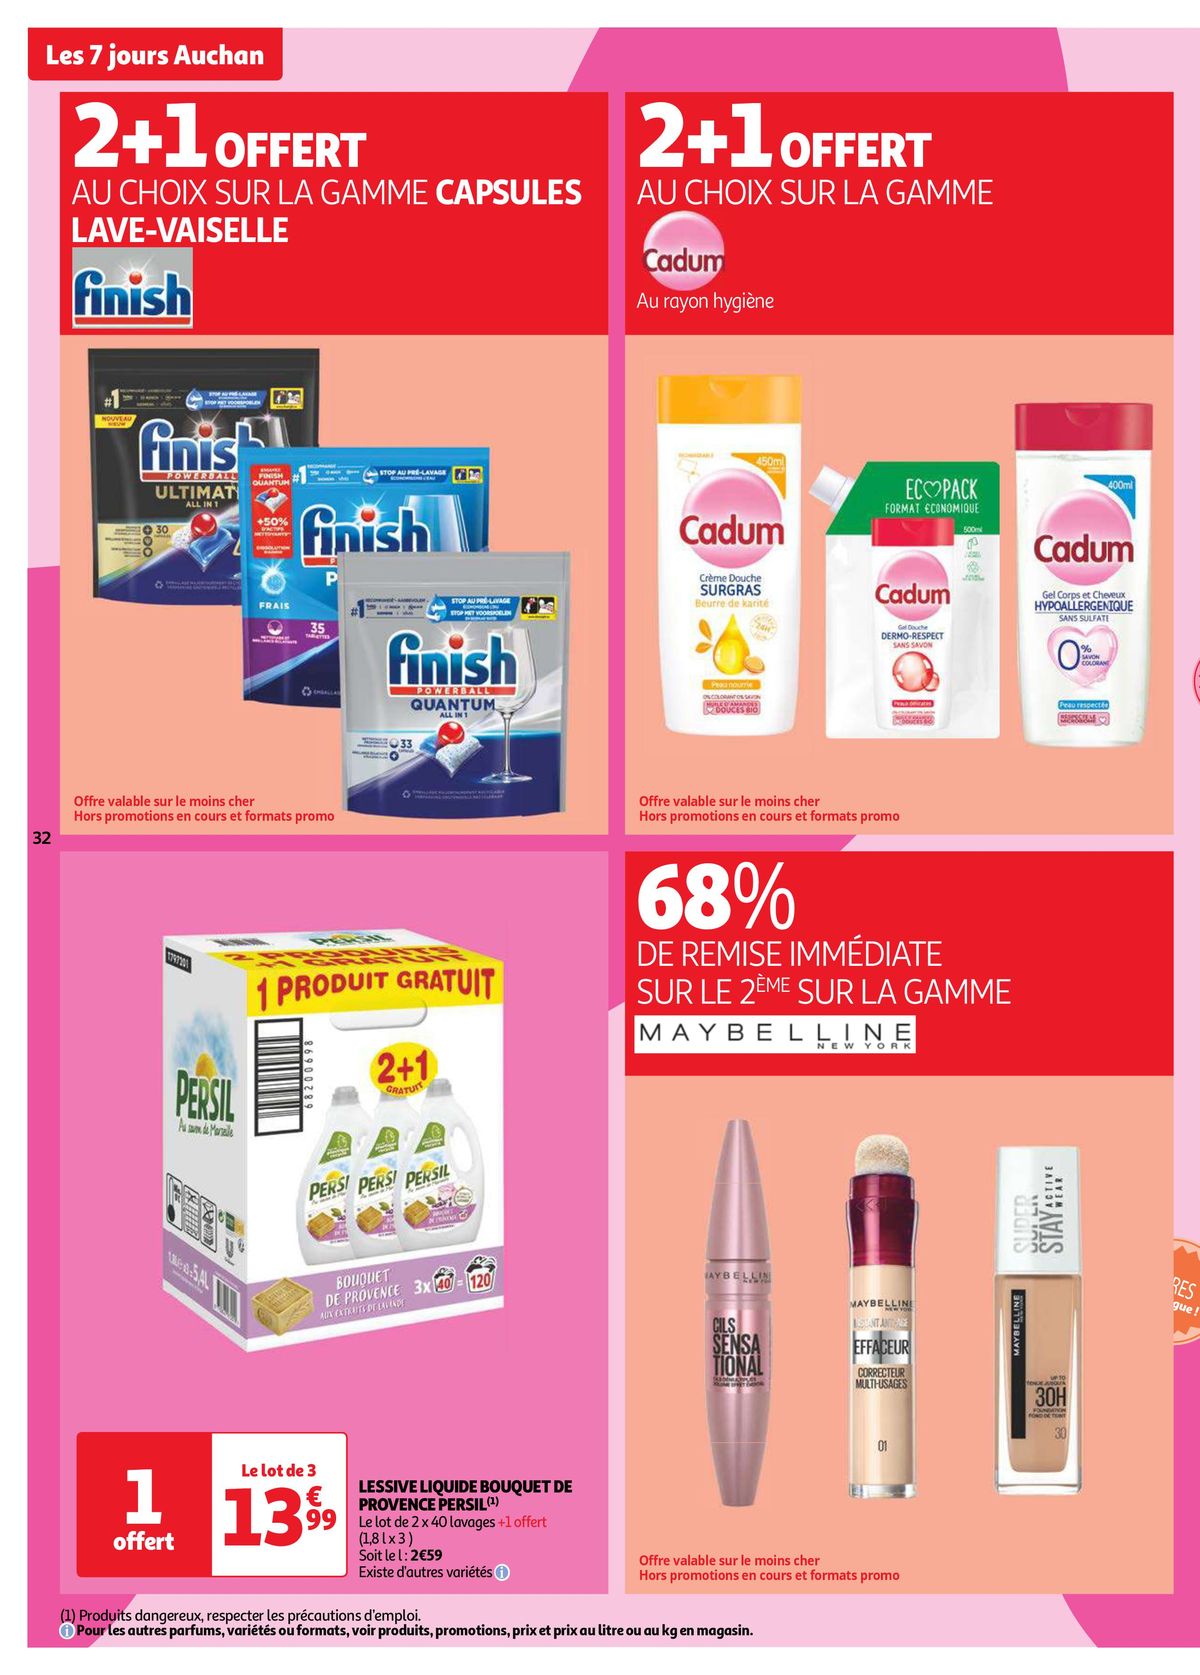 Catalogue Les 7 jours Auchan, c'est maintenant !, page 00032